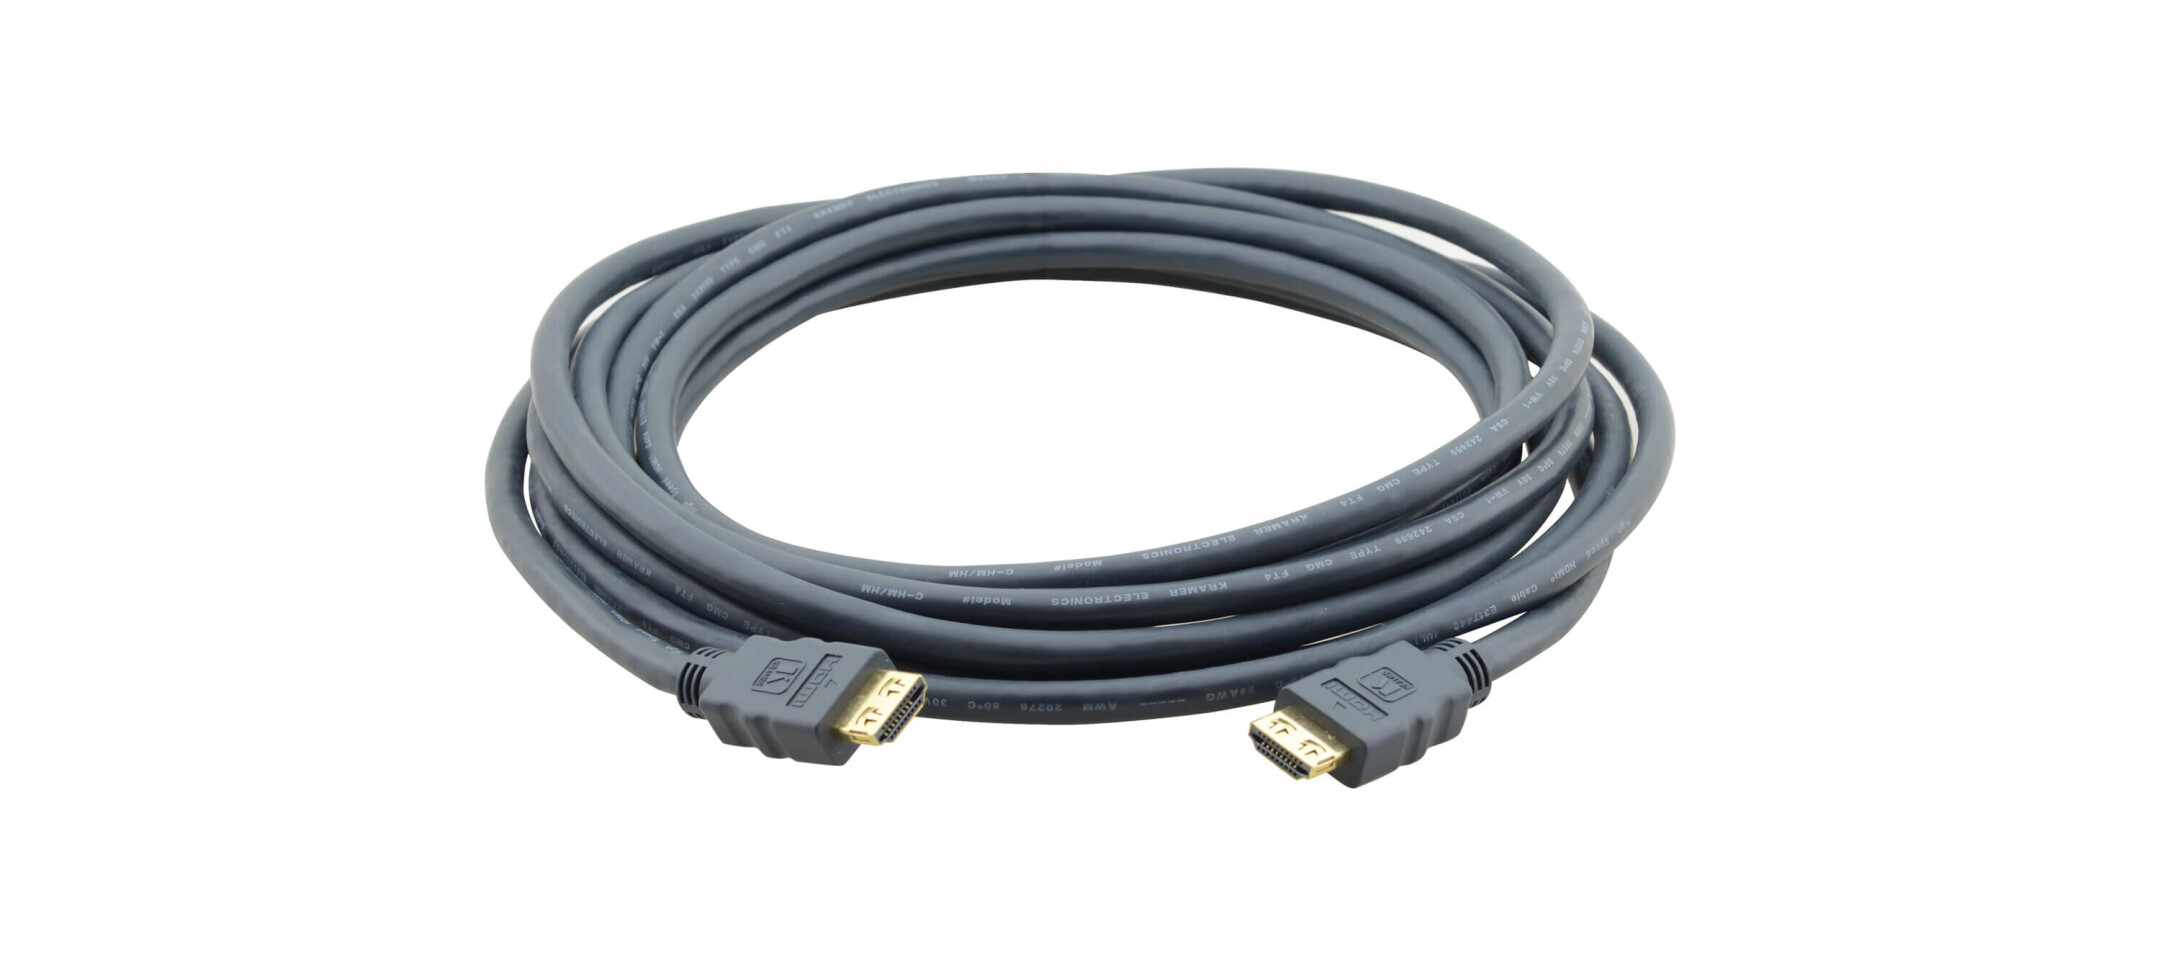 Kramer-CLS-HM-HM-ETH-3-HDMI-Kabel-mit-Ethernet-raucharm-und-halogenfrei-Stecker-Stecker-0-9-m